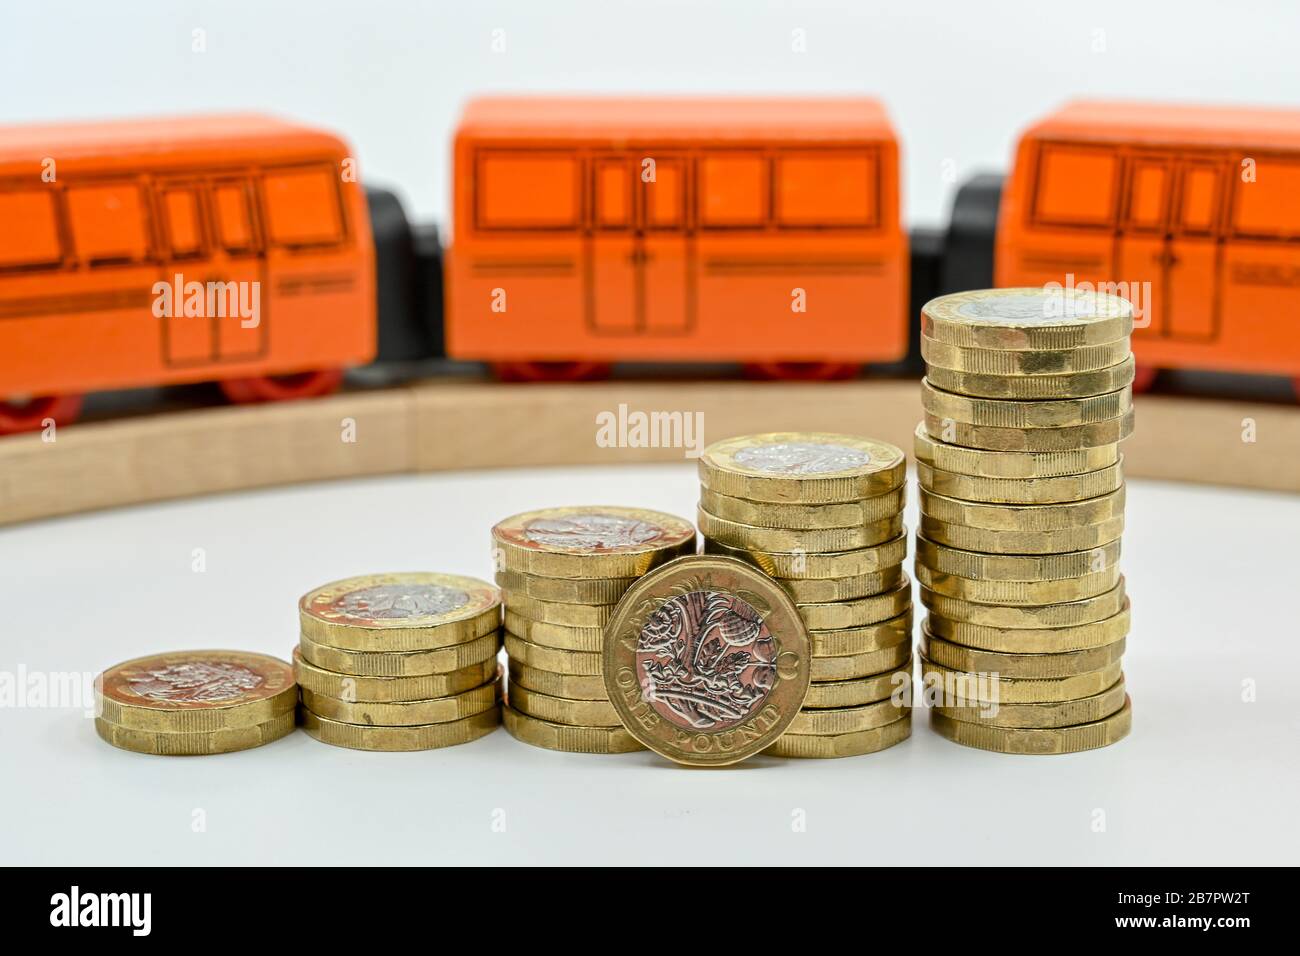 LONDON, Großbritannien - JANUAR 2020: Nahaufnahme von Säulen britischer Ein-Pfund-Münzen in aufsteigender Reihenfolge mit einem Holzspielzeugzug, der im Hintergrund verschwommen ist Stockfoto